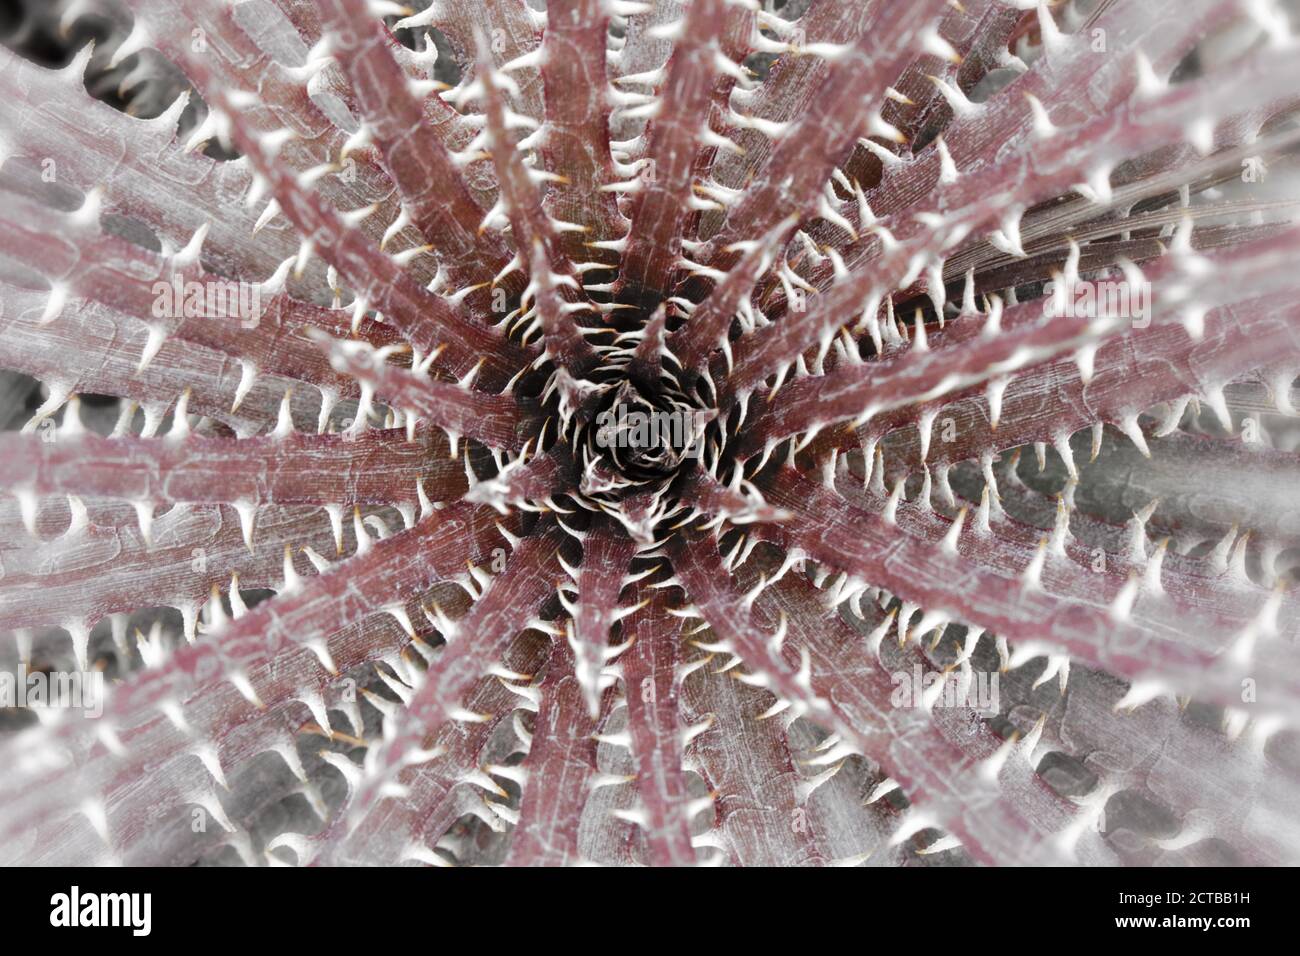 photographie macro de plante de cactus à pointes, art graphique psychédélique, formes géométriques donnant l'illusion d'un tunnel. Banque D'Images